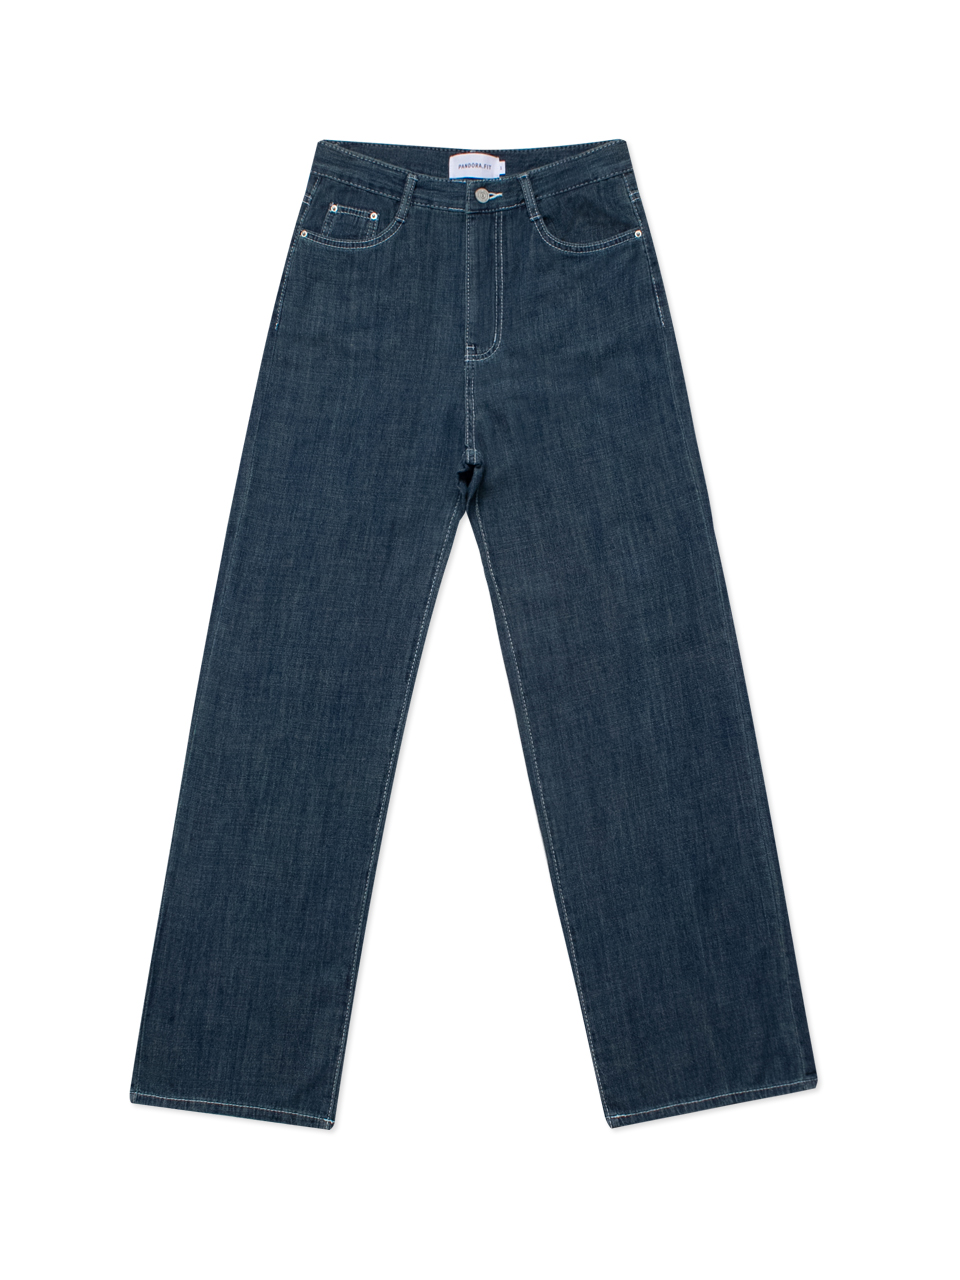 [WIDE] Thursday Jeans